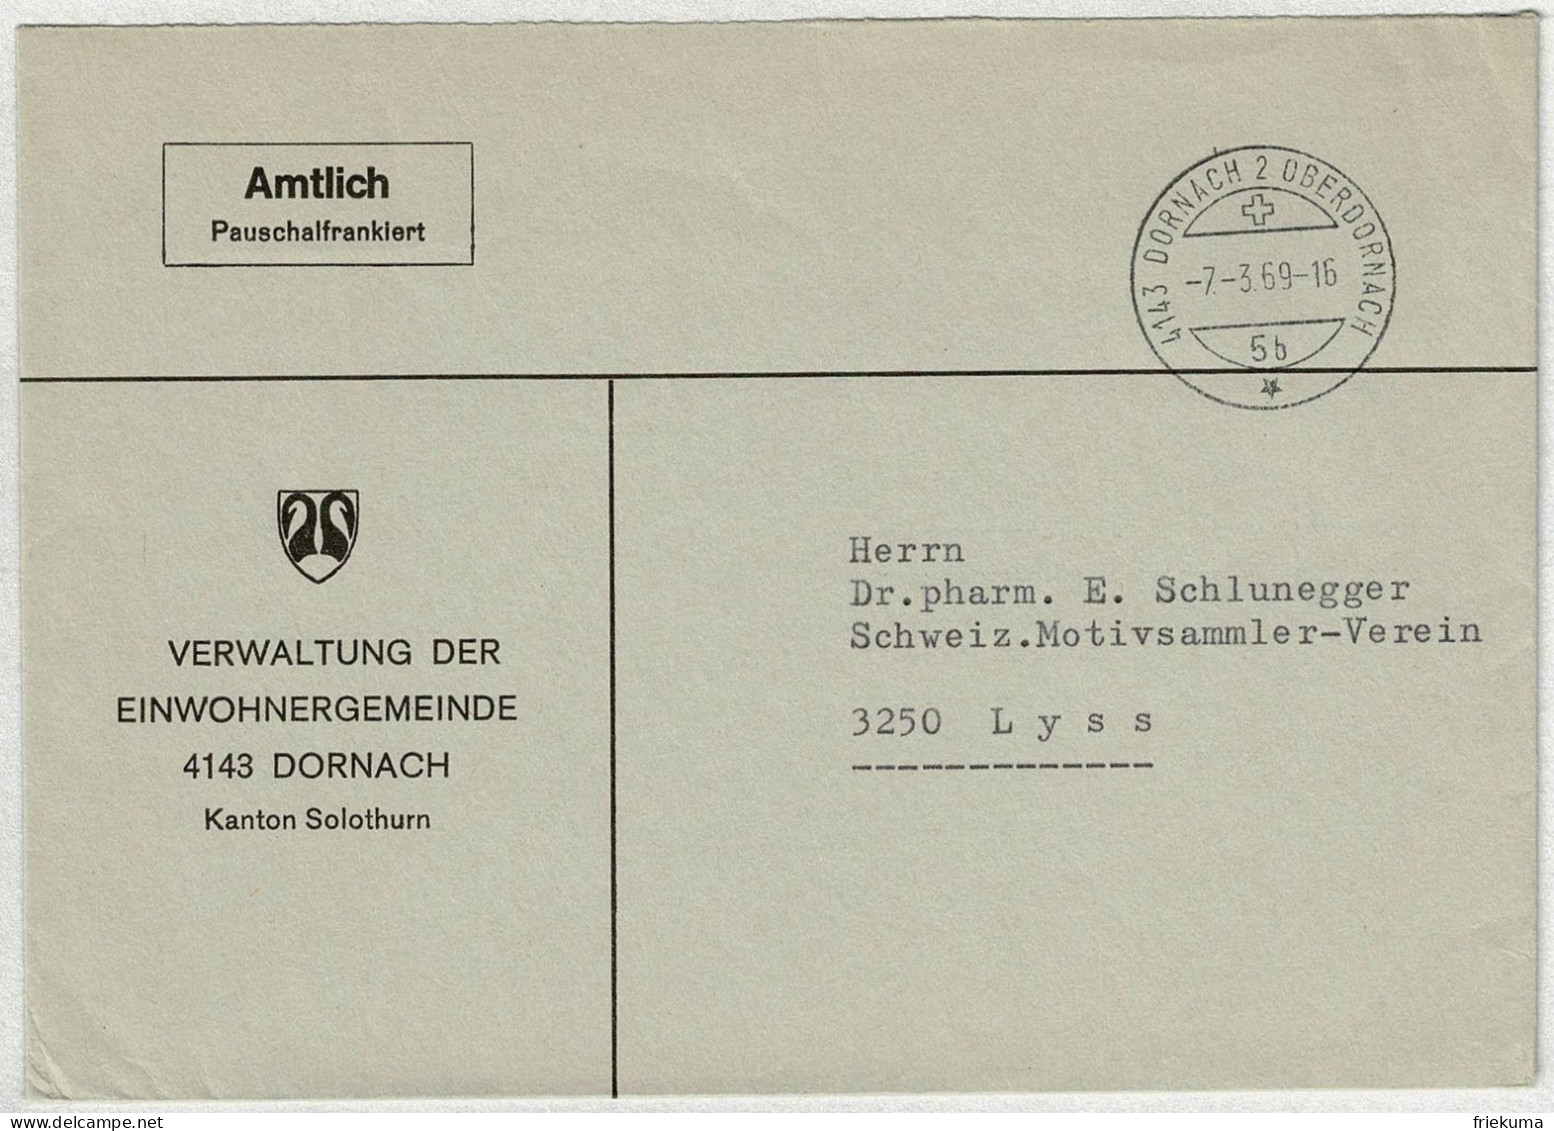 Schweiz 1969, Brief Amtlich Pauschalfrankiert Dornach - Lyss - Marcophilie